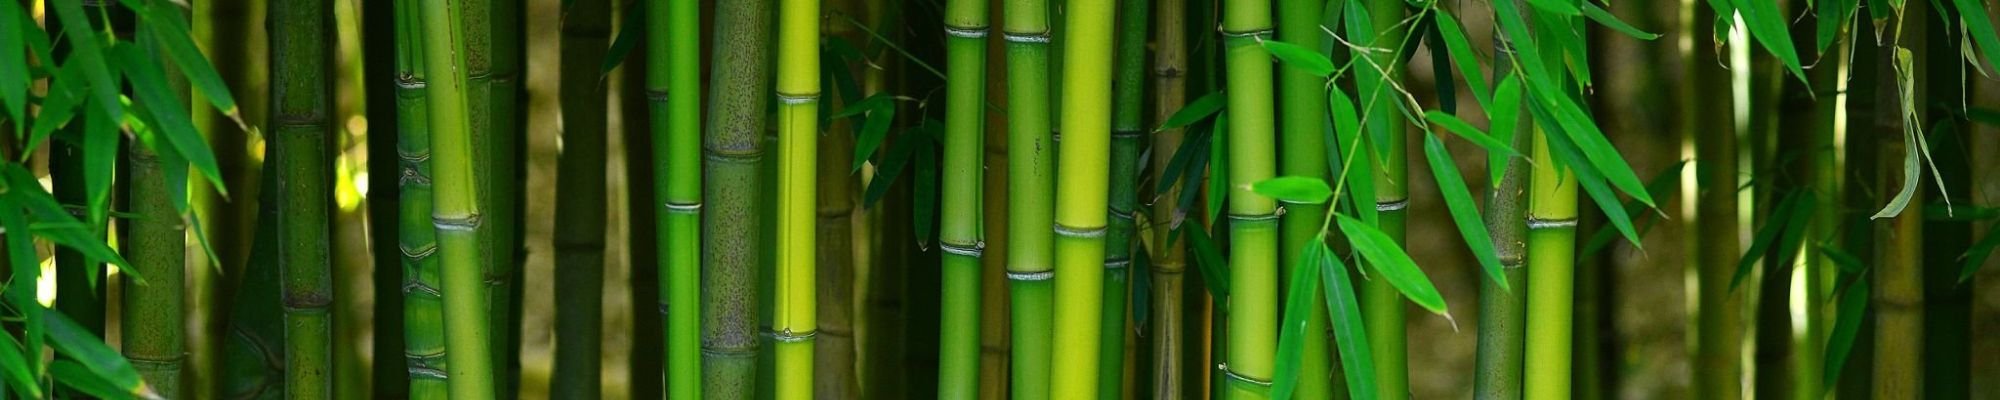 Bamboo plantation - Carpet Clearance Warehouse in Keene